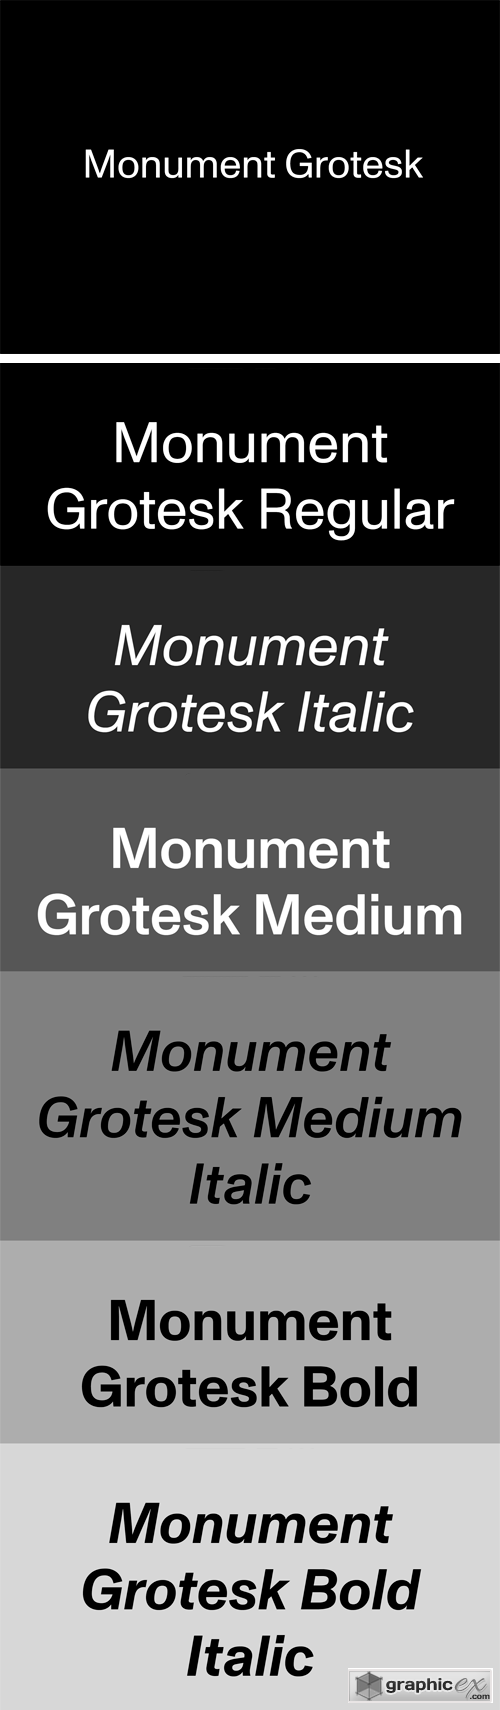 Monument Grotesk Font Family